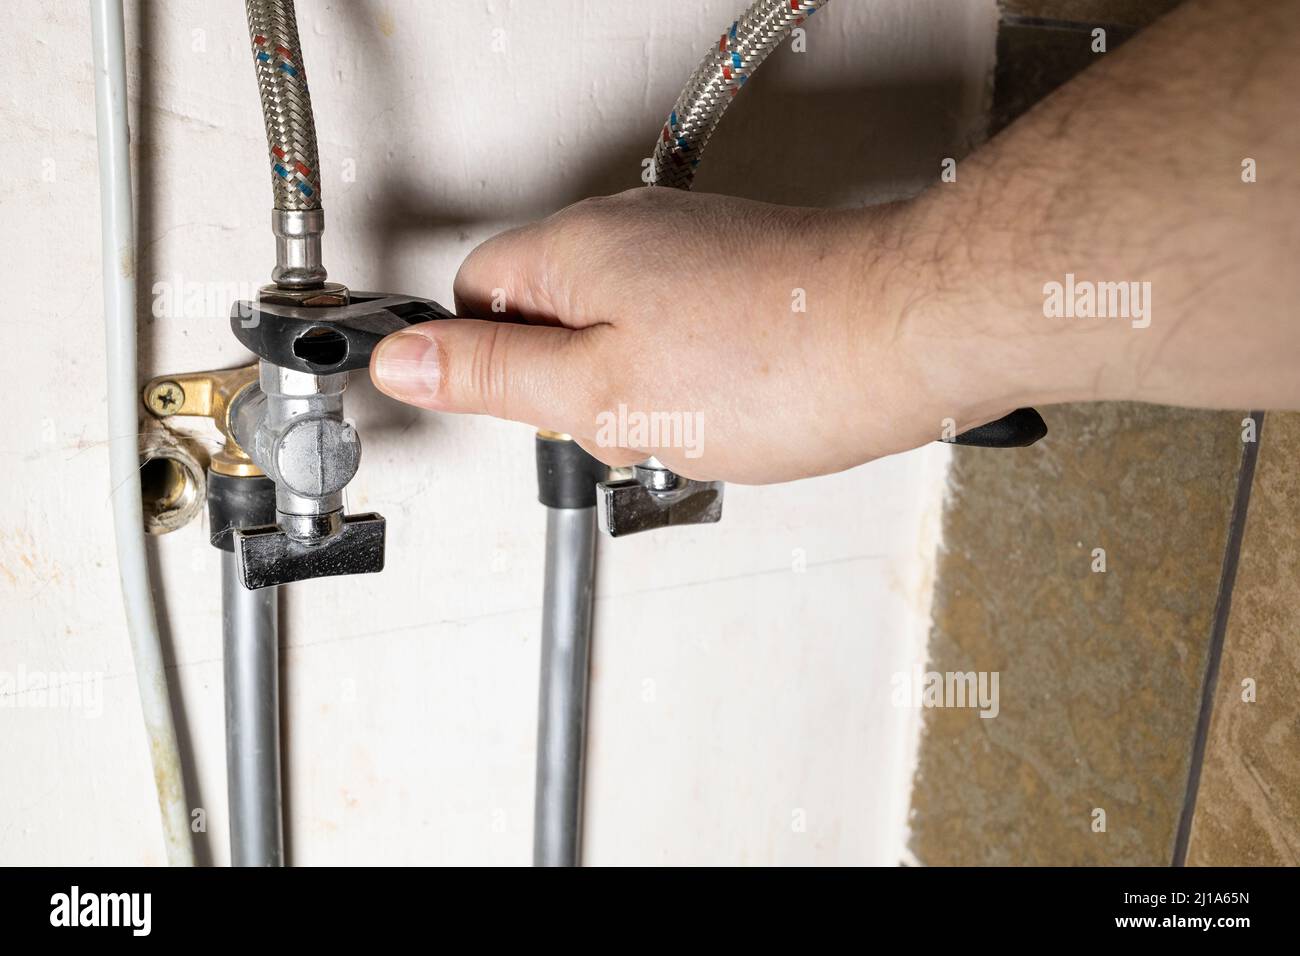 Klempner Hand installiert Wasser-Stopp-Hahn durch verstellbaren Schraubenschlüssel zu Hause Stockfoto